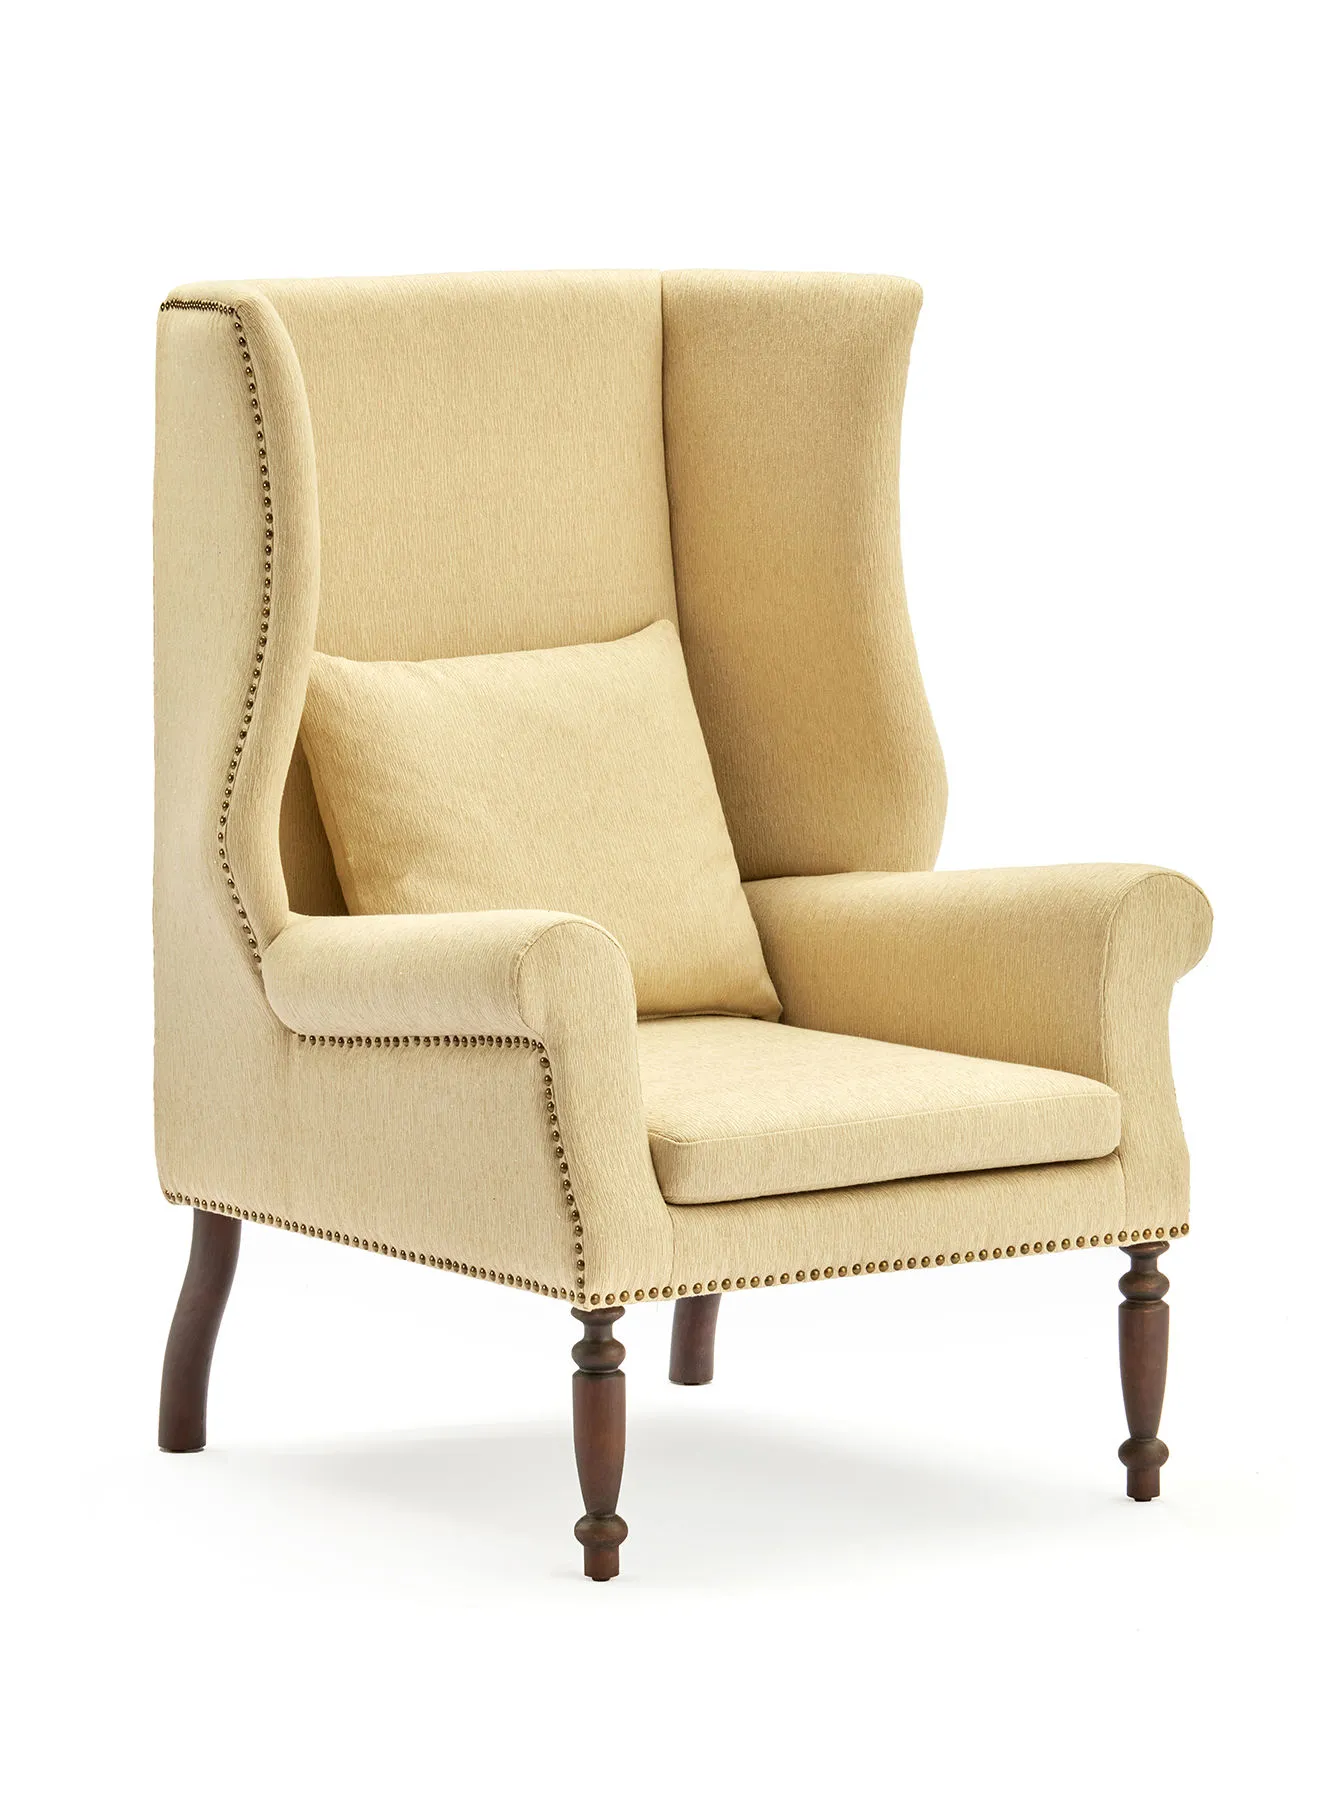 ebb & flow Armchair Luxurious - In Dark Brown Wooden Chair Size 890 X 865 X 1220